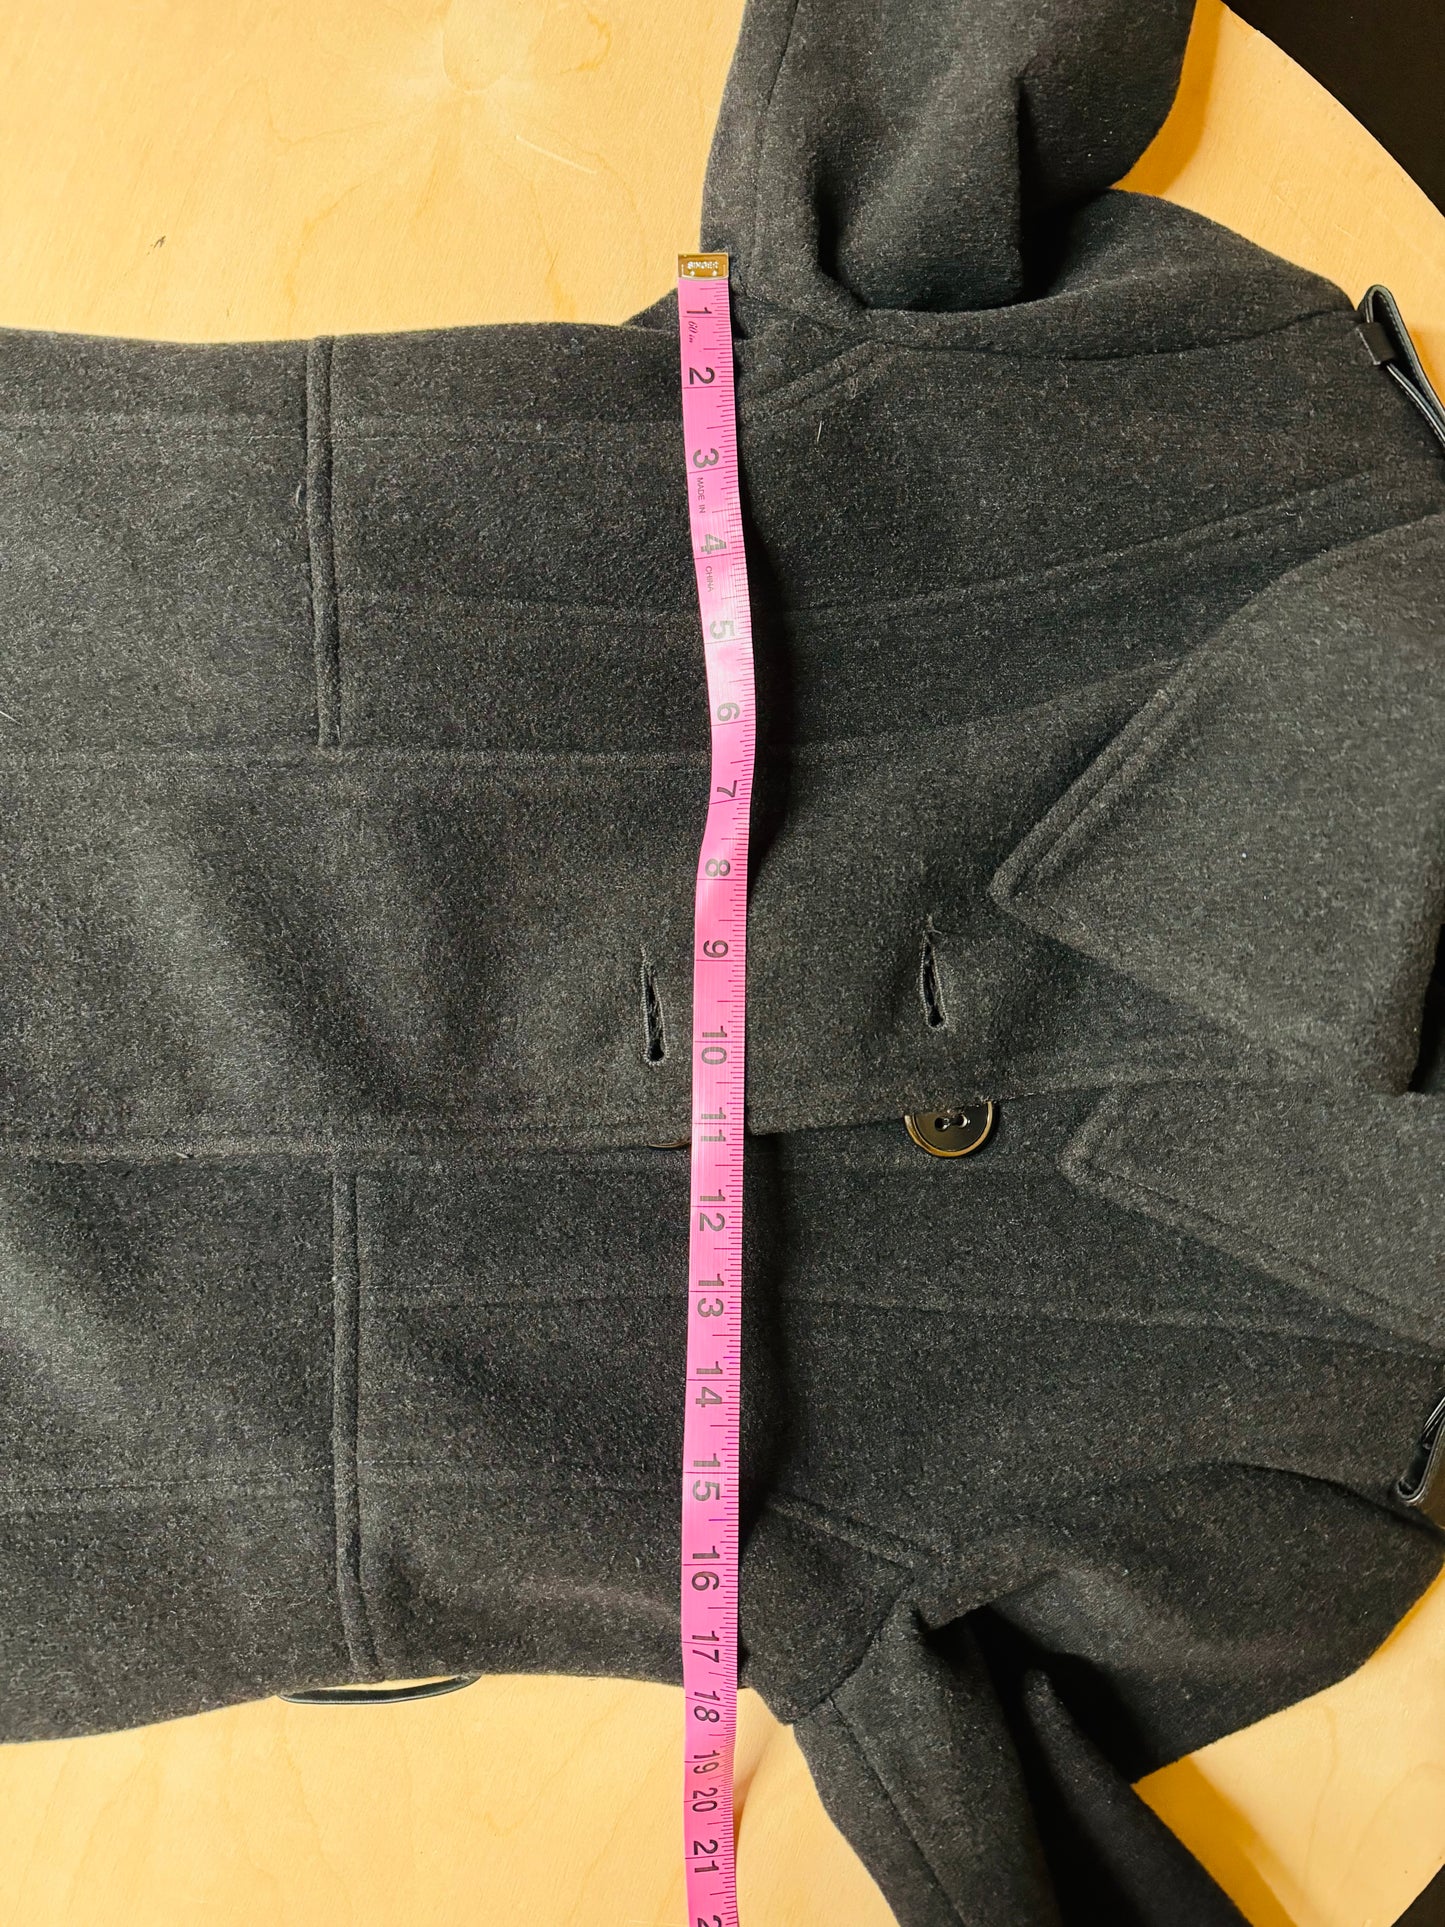 Mackage Semi Wool Cashmere Women's Long Coat Black - Size XL